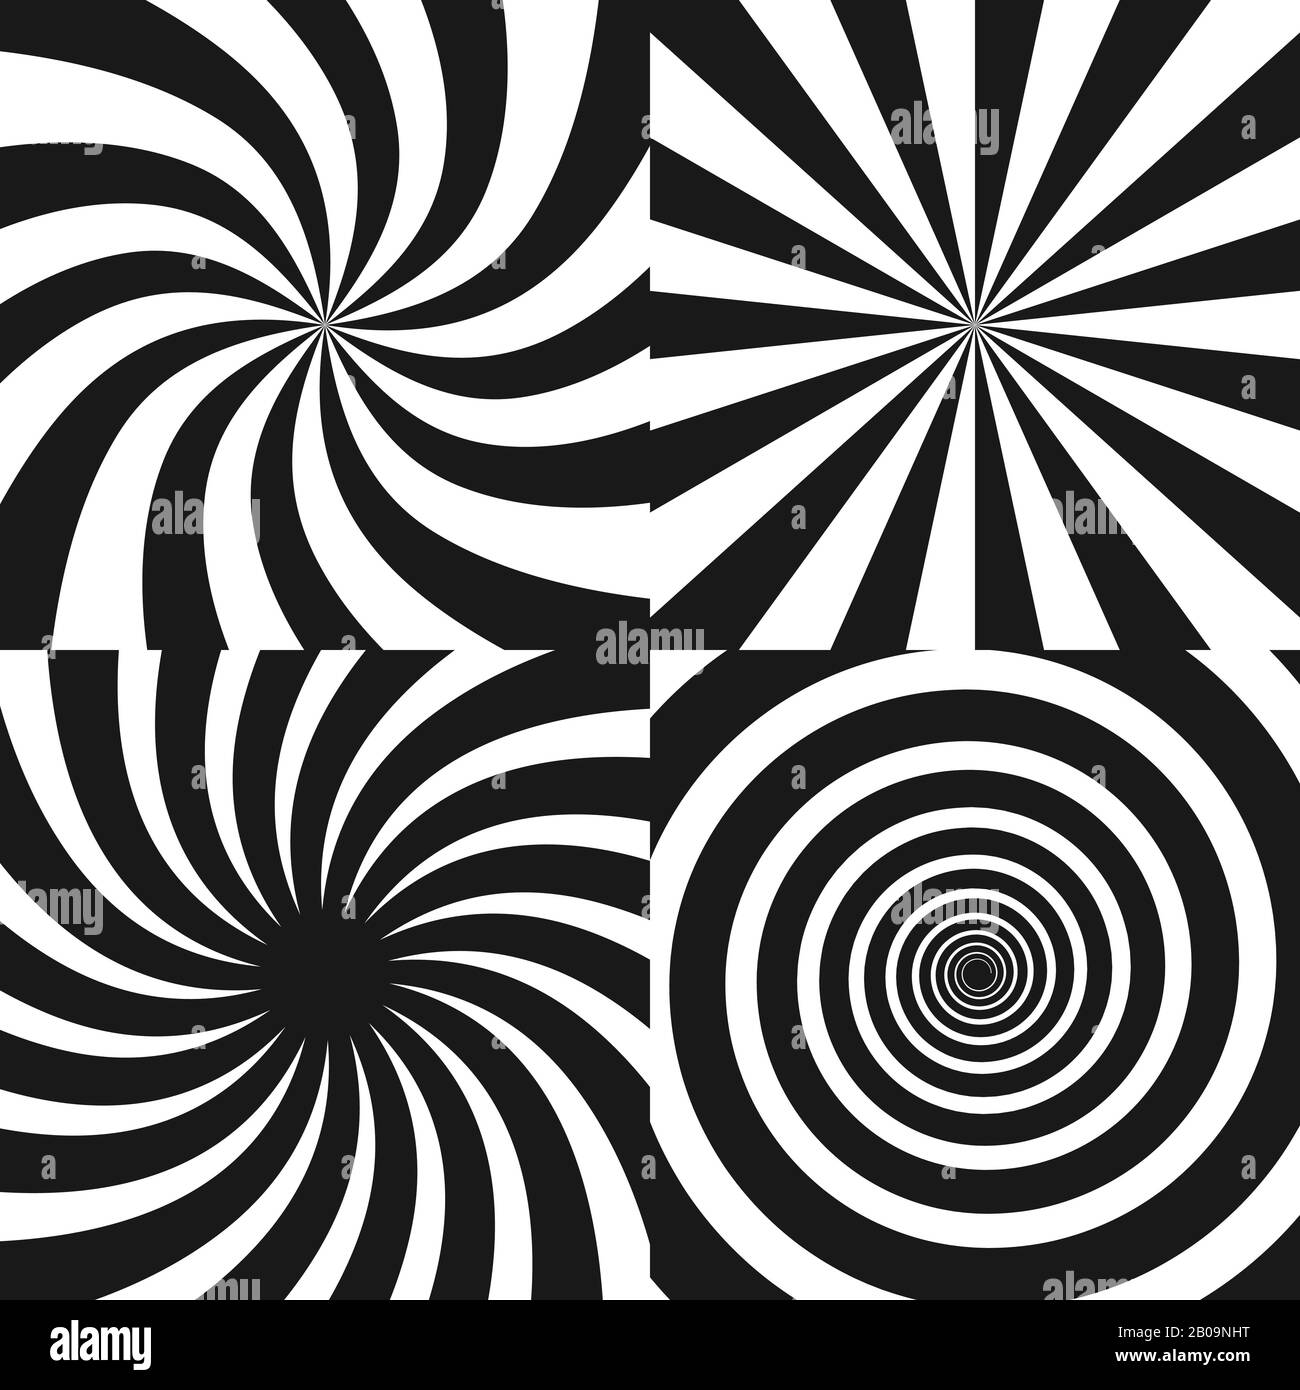 Spirale psichedelica con raggi radiali, twirl, effetto comico twisted, sfondi vortex - set vettoriale. Vortice psichedelico spirale bianca nera, effetto di vortice radiale ipnotico Illustrazione Vettoriale